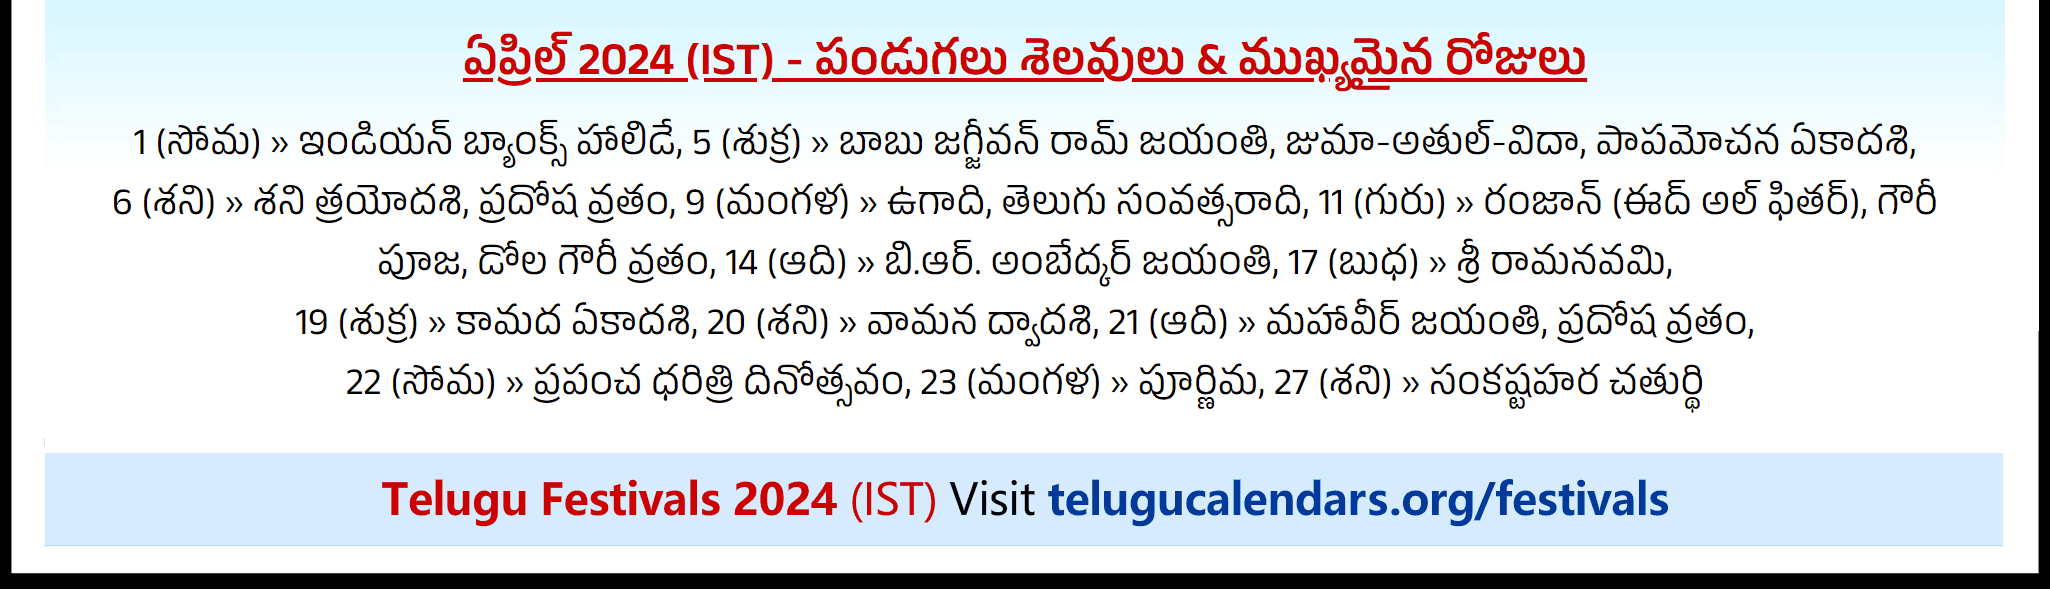 Telugu Festivals 2024 April Auckland